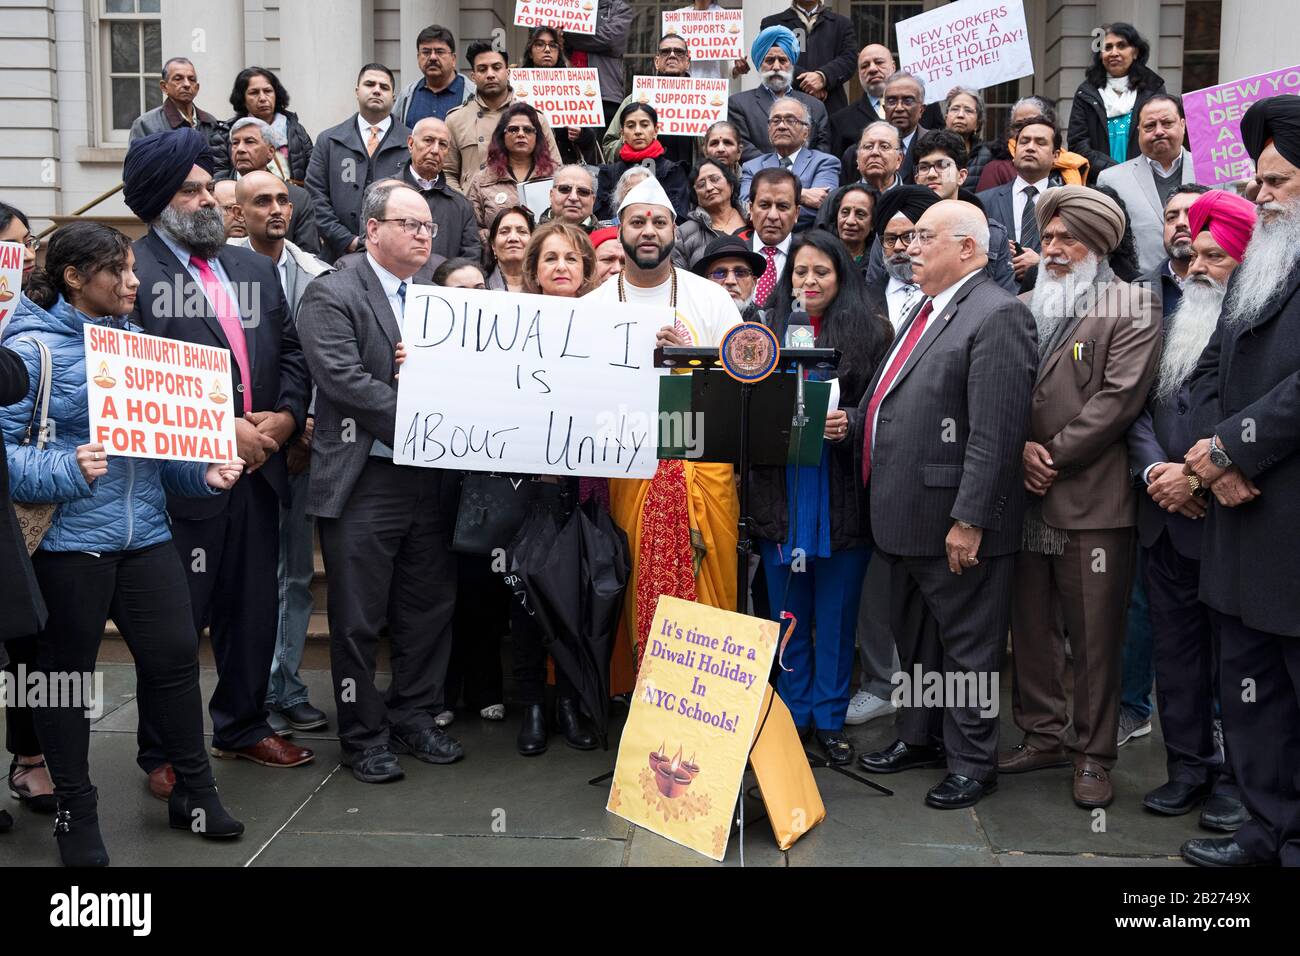 Eine vielfältige Menge Hindus, Sikhs, Kaukasier und andere demonstrieren auf den Stufen des Rathauses, um Diwali zum Schulurlaub zu erklären. In Manhattan, NYC. Stockfoto